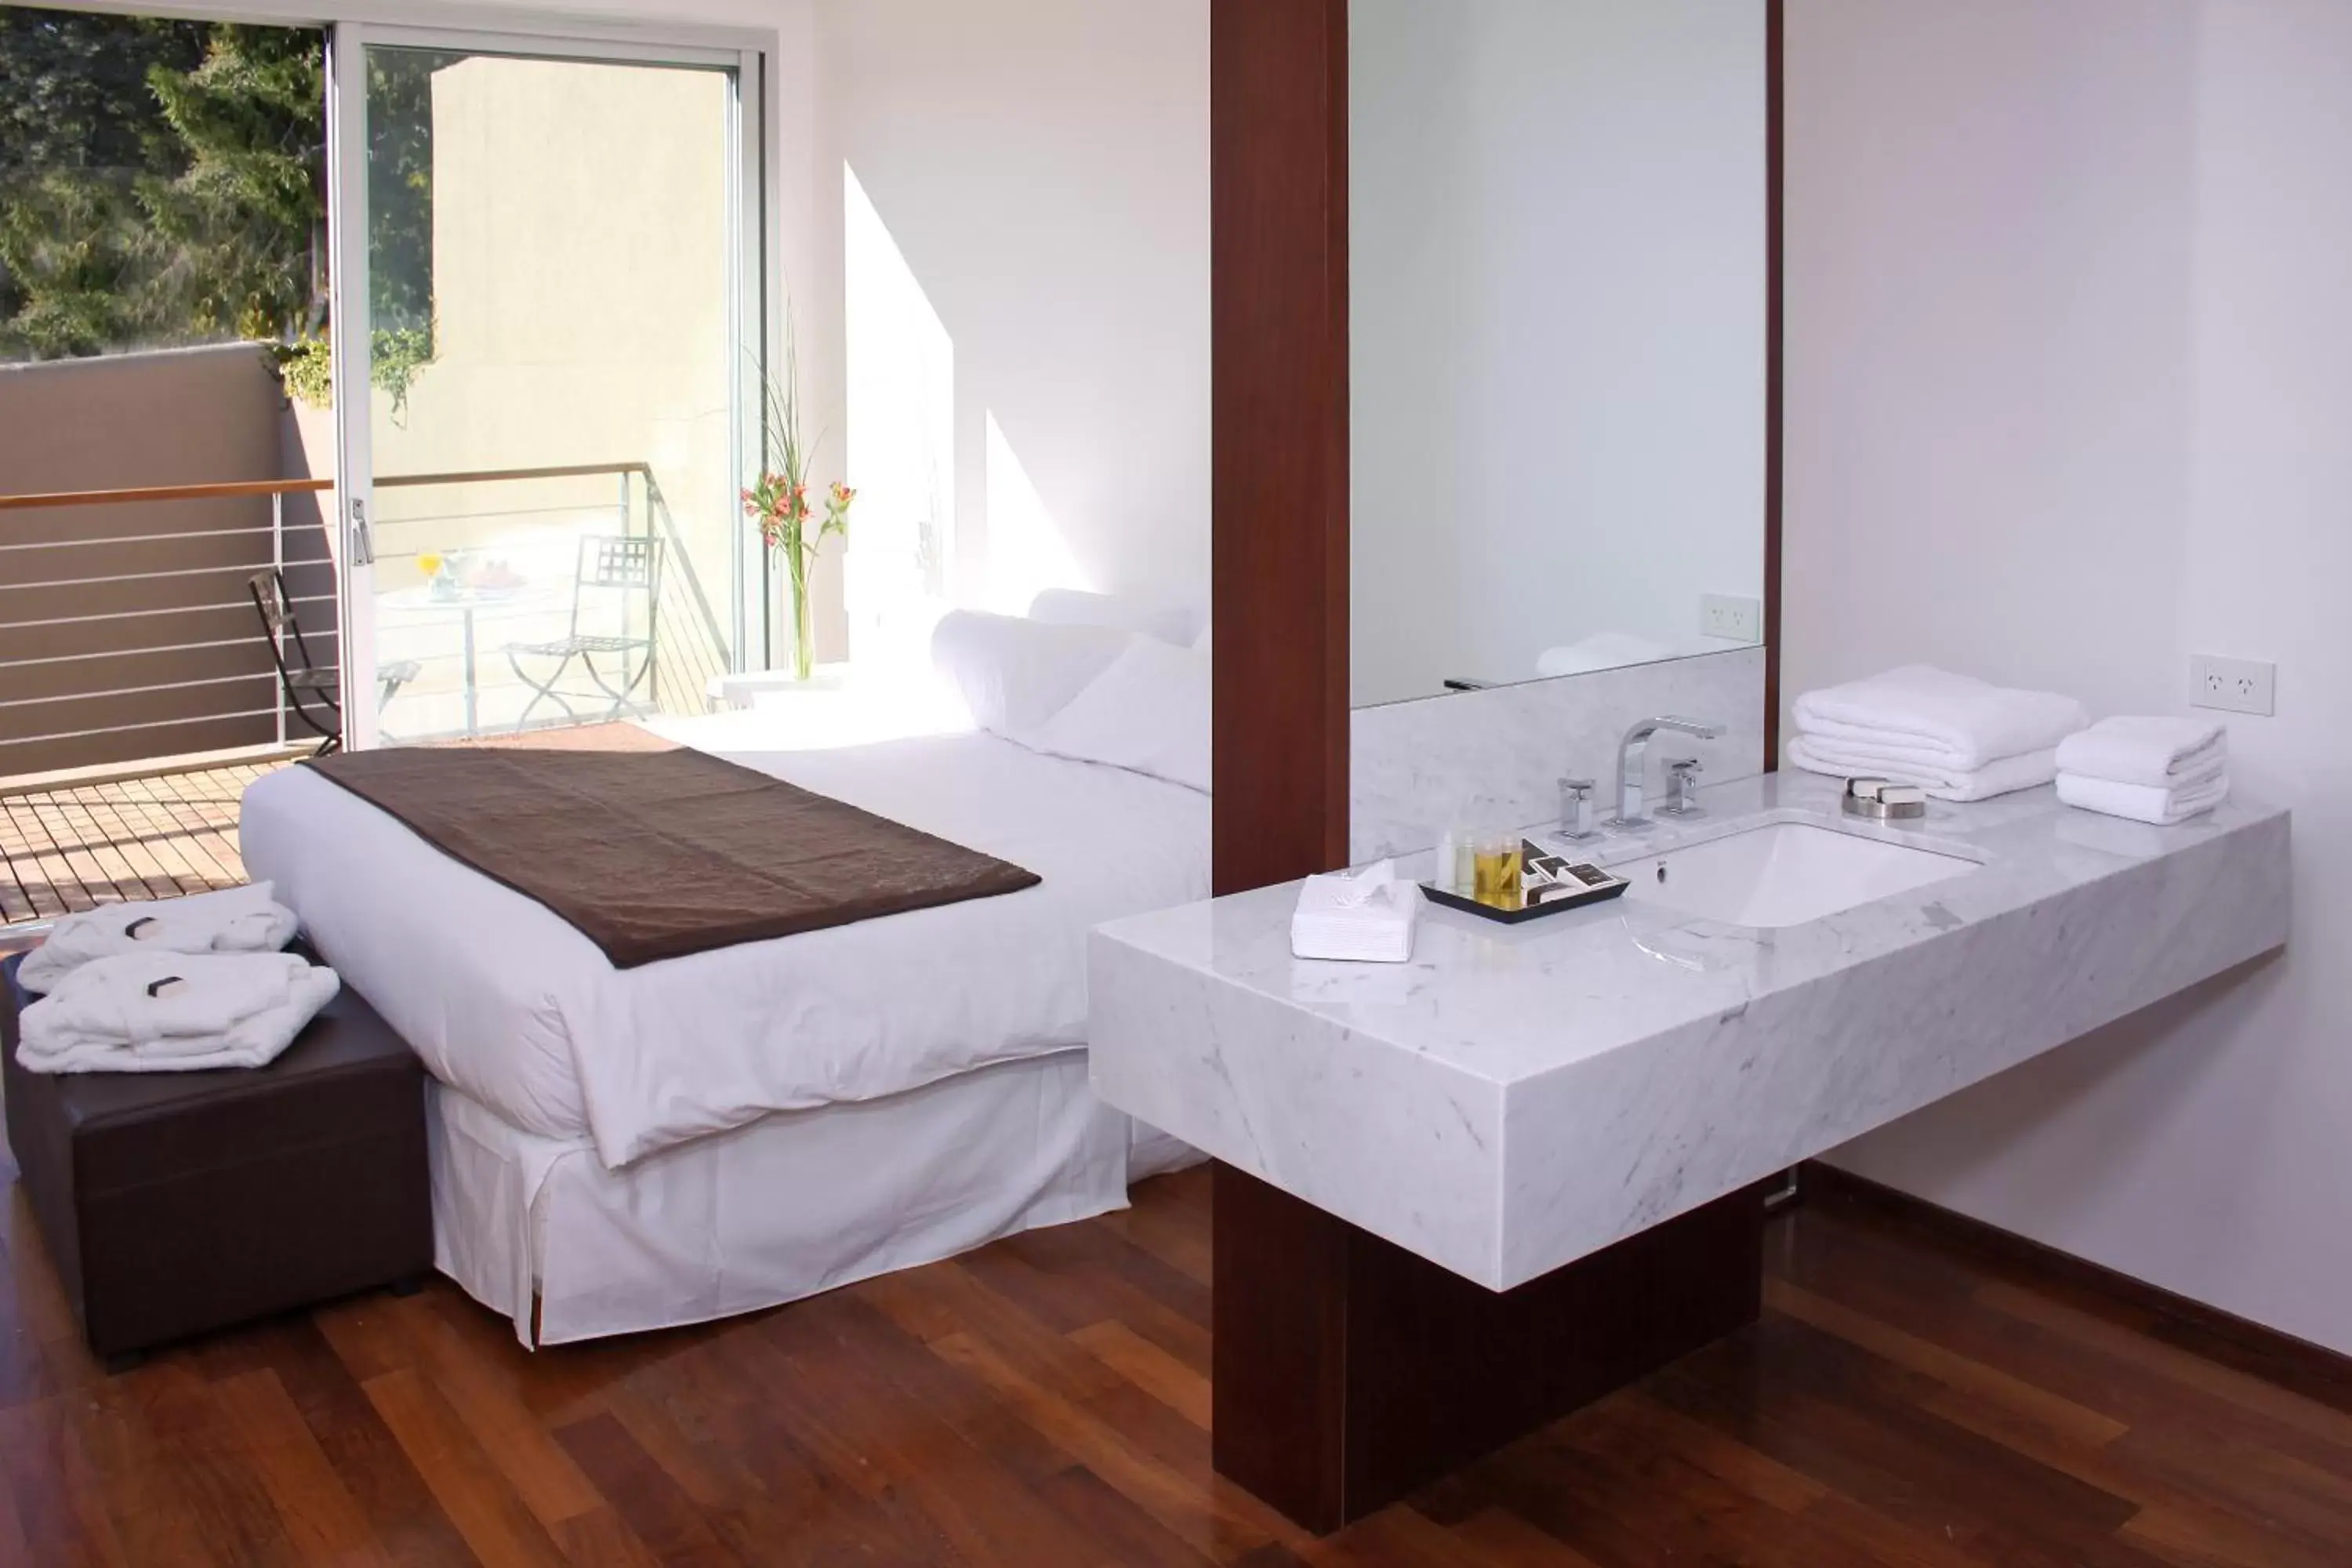 Area and facilities, Bathroom in San Isidro Plaza Hotel